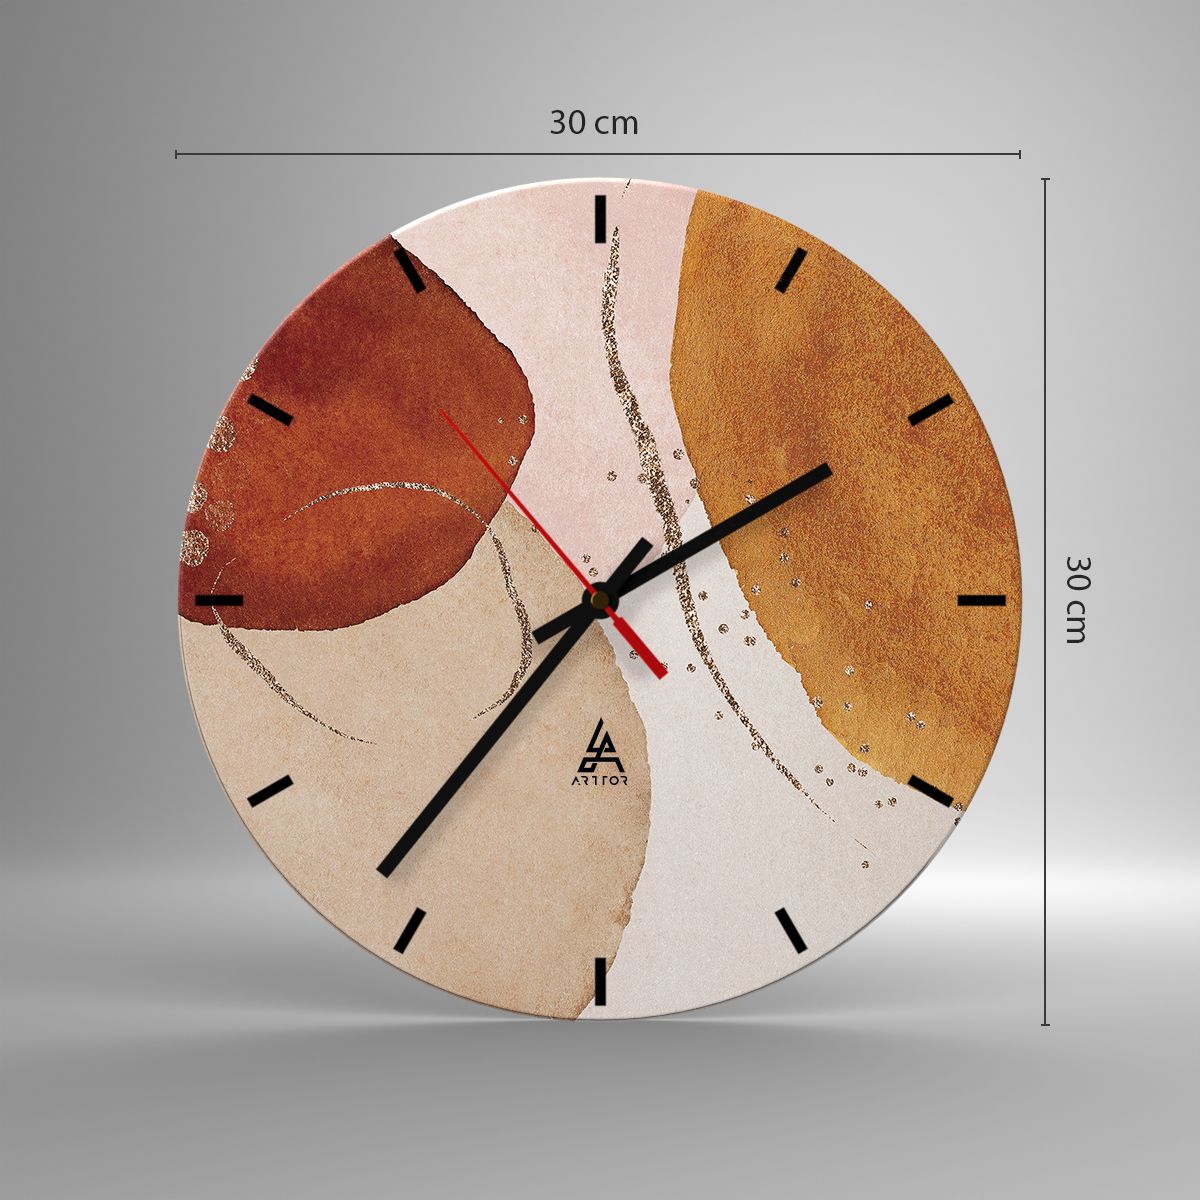 Orologio da parete Arttor - Rotondità e movimento - Quadrante con trattini,  Forma: Cerchio - 30x30 cm - Astrazione, Arte, Modello Moderno